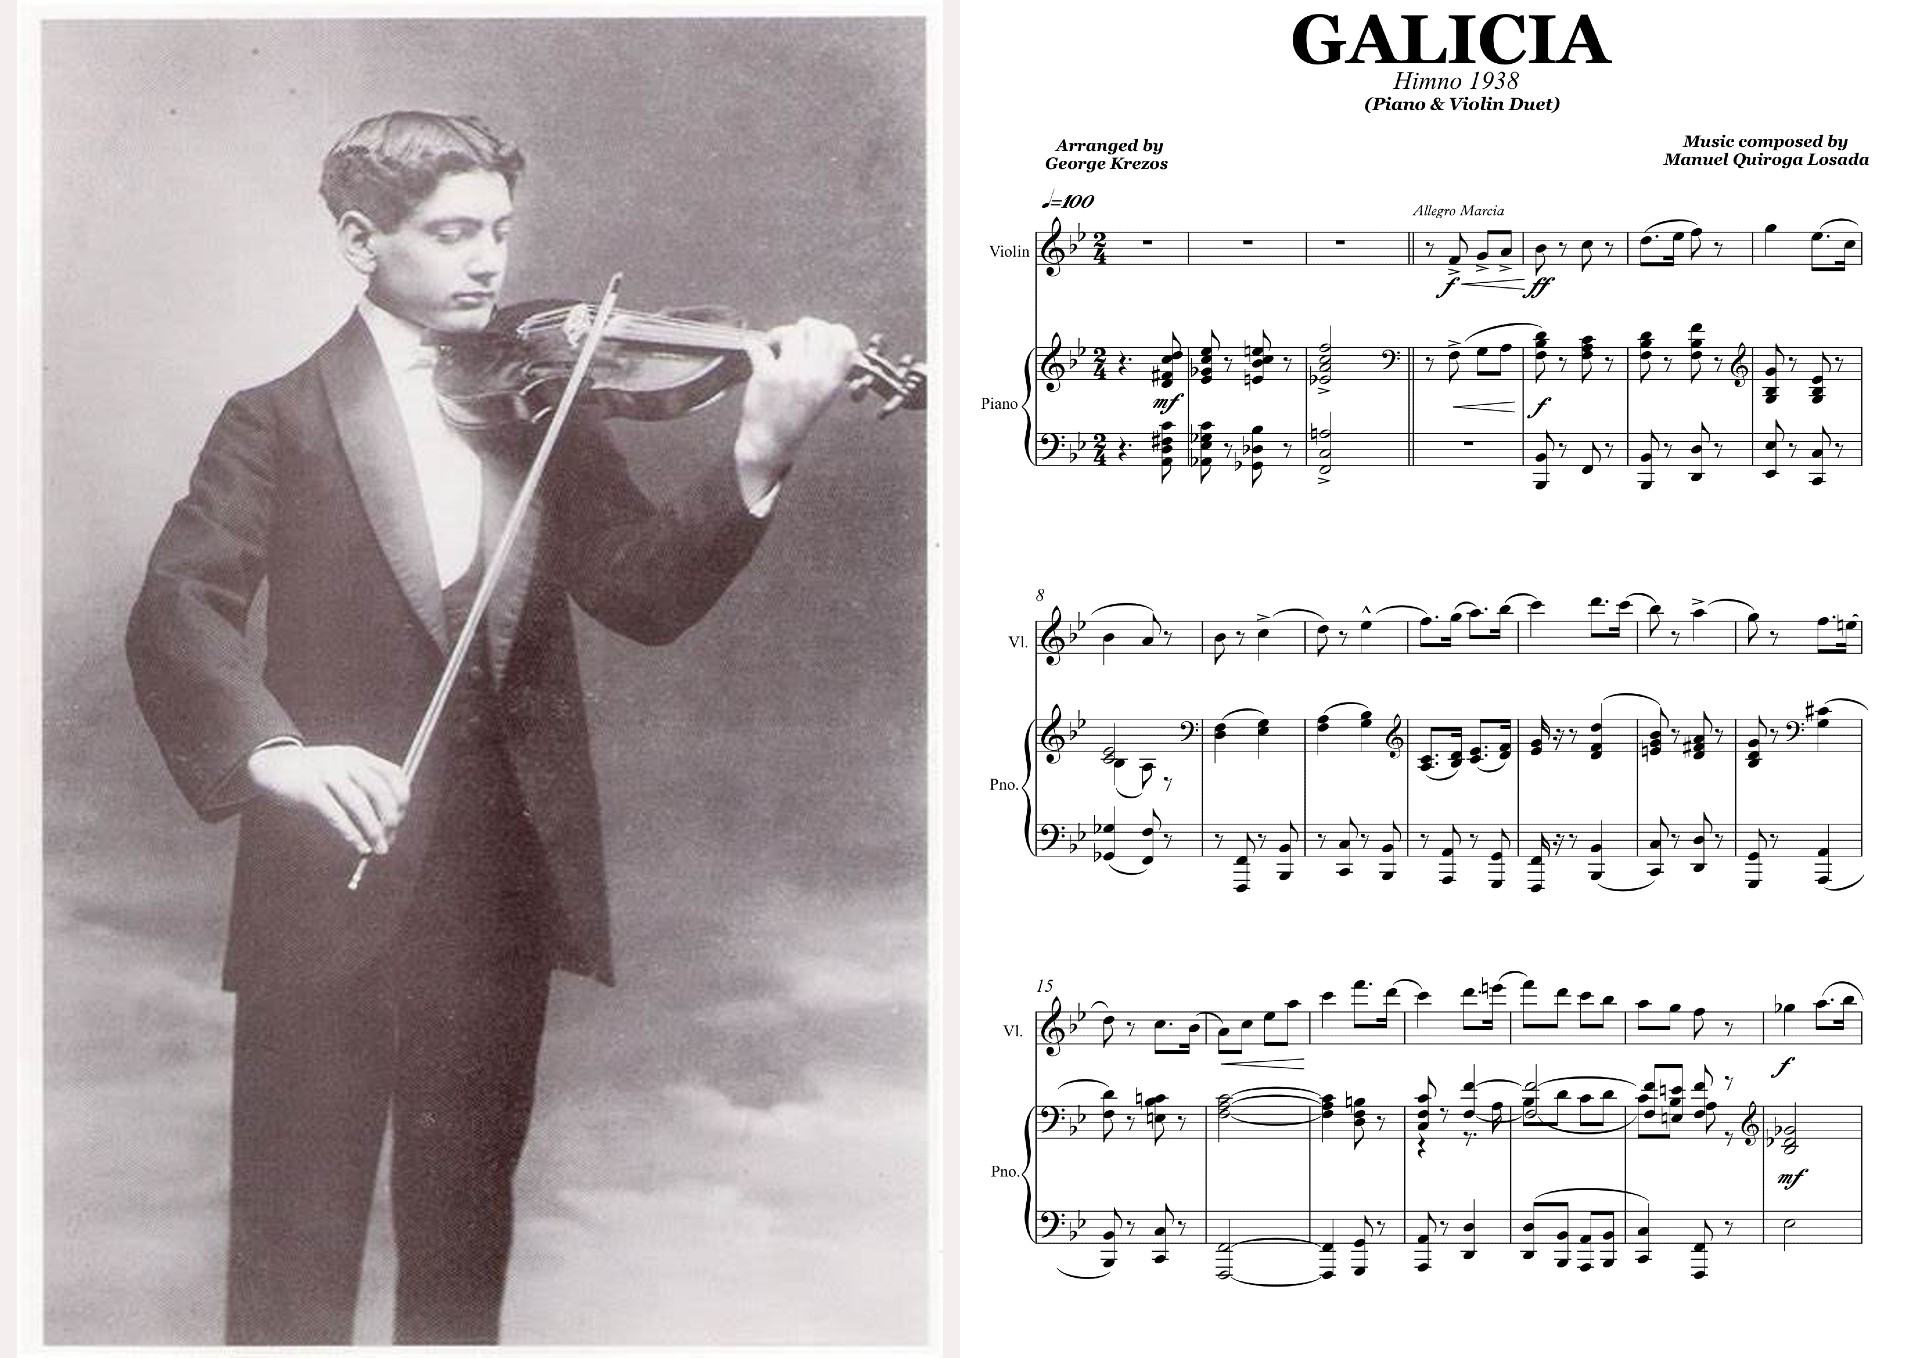 GALICIA (Himno) - Piano & Violin.jpg